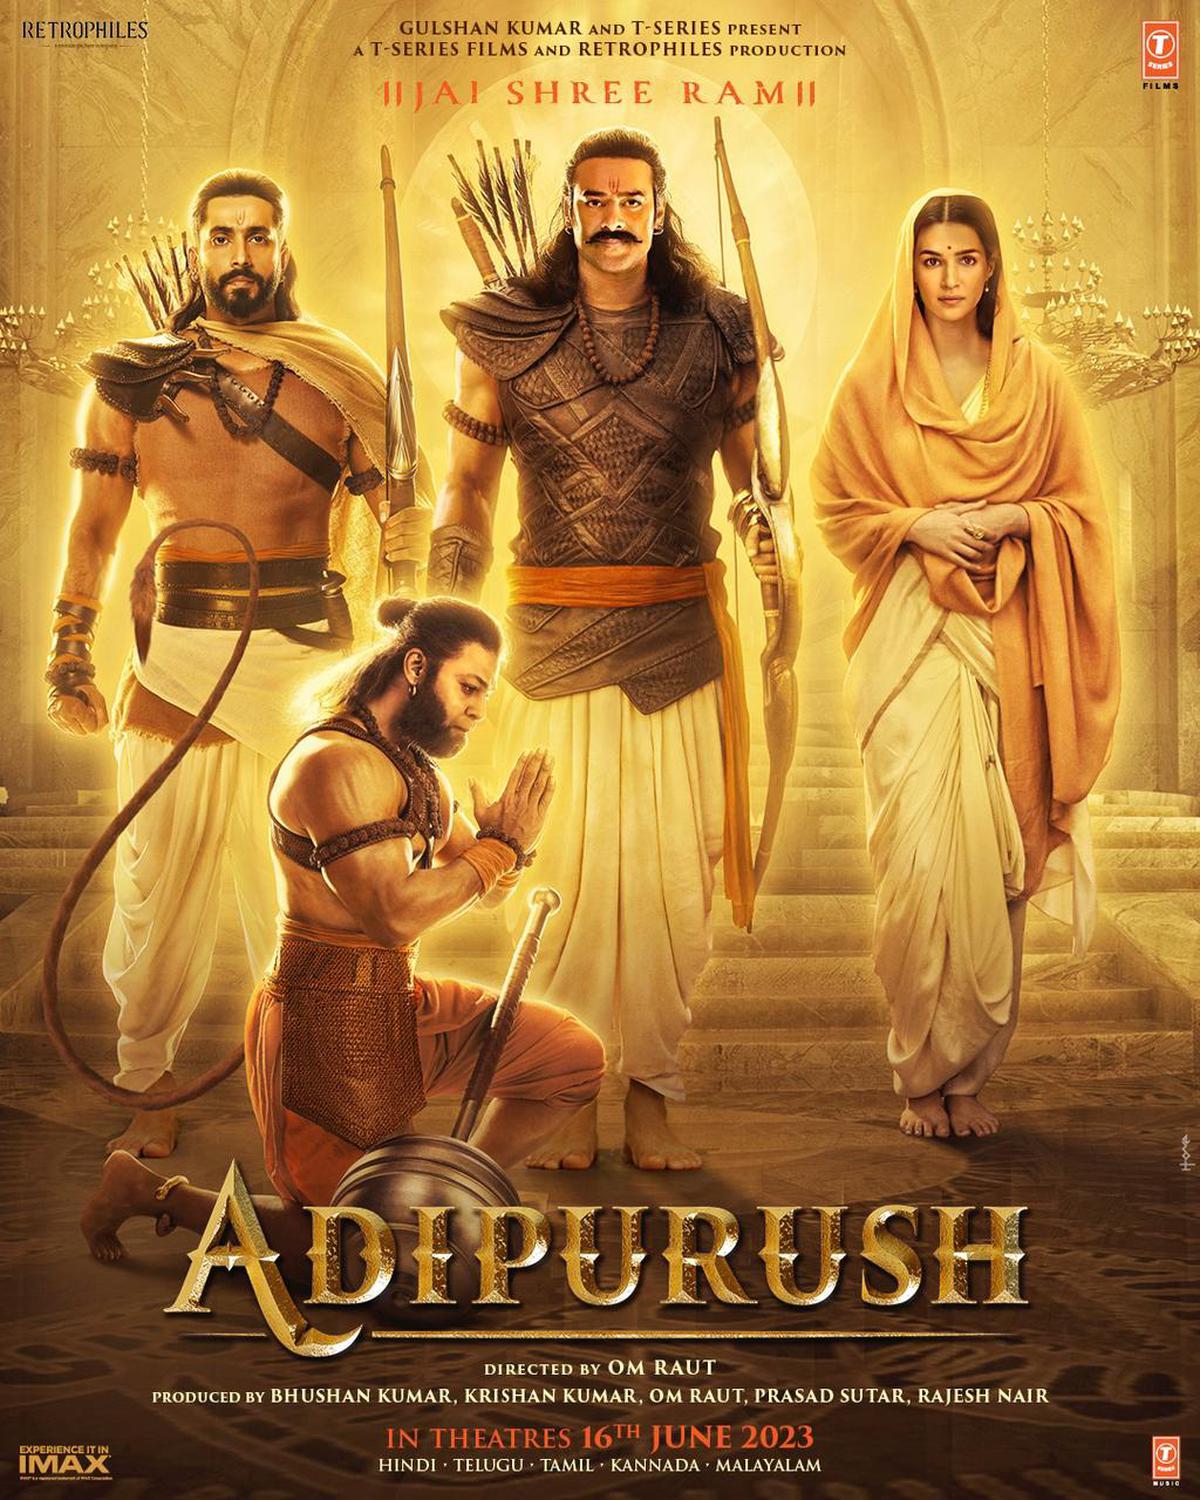 Adipurush[a]